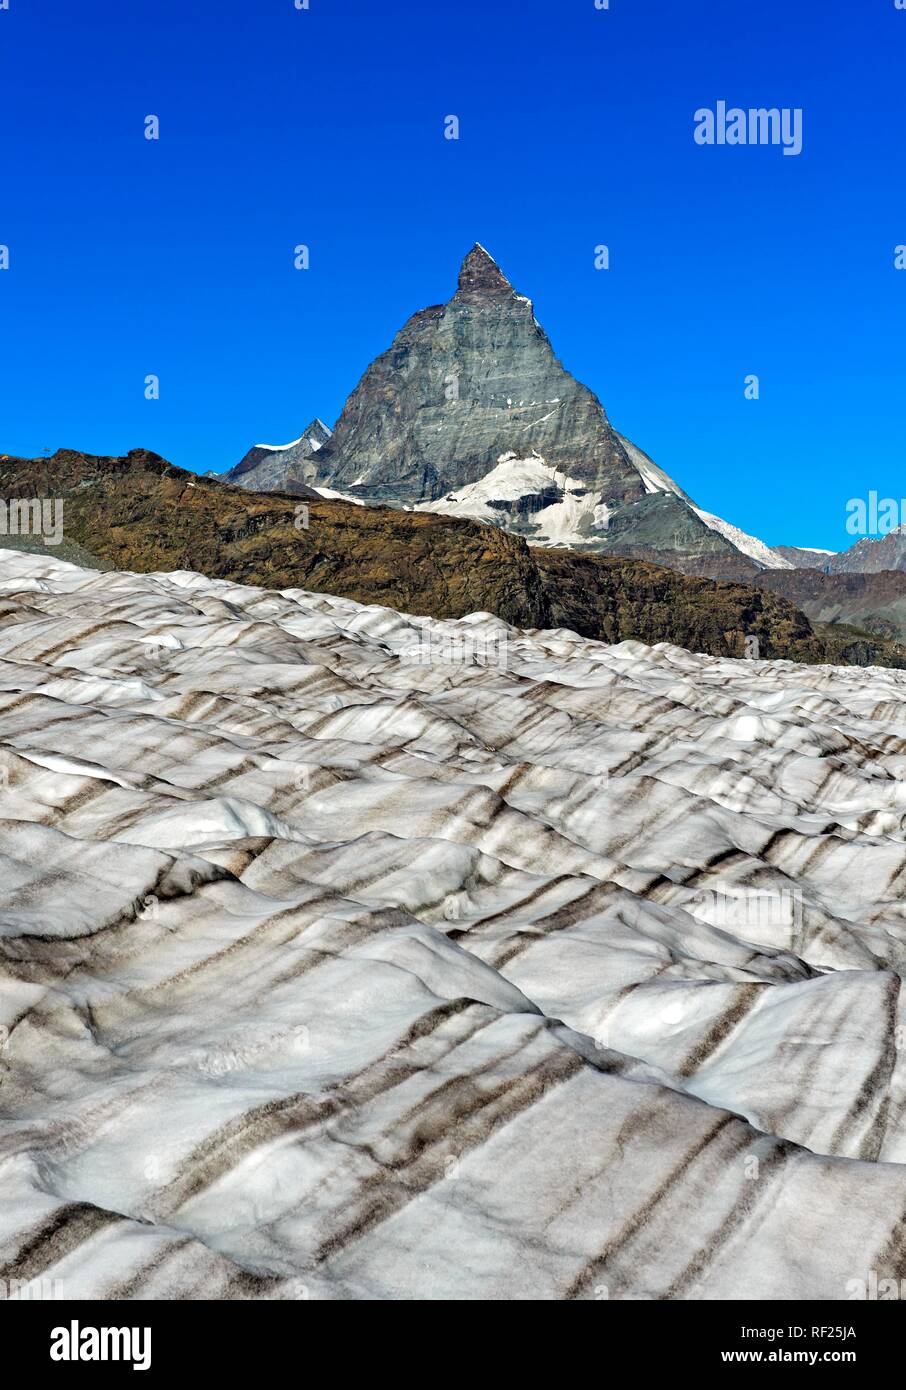 Icefield of the Gorner glacier with view of the Matterhorn, Zermatt, Valais, Switzerland Stock Photo